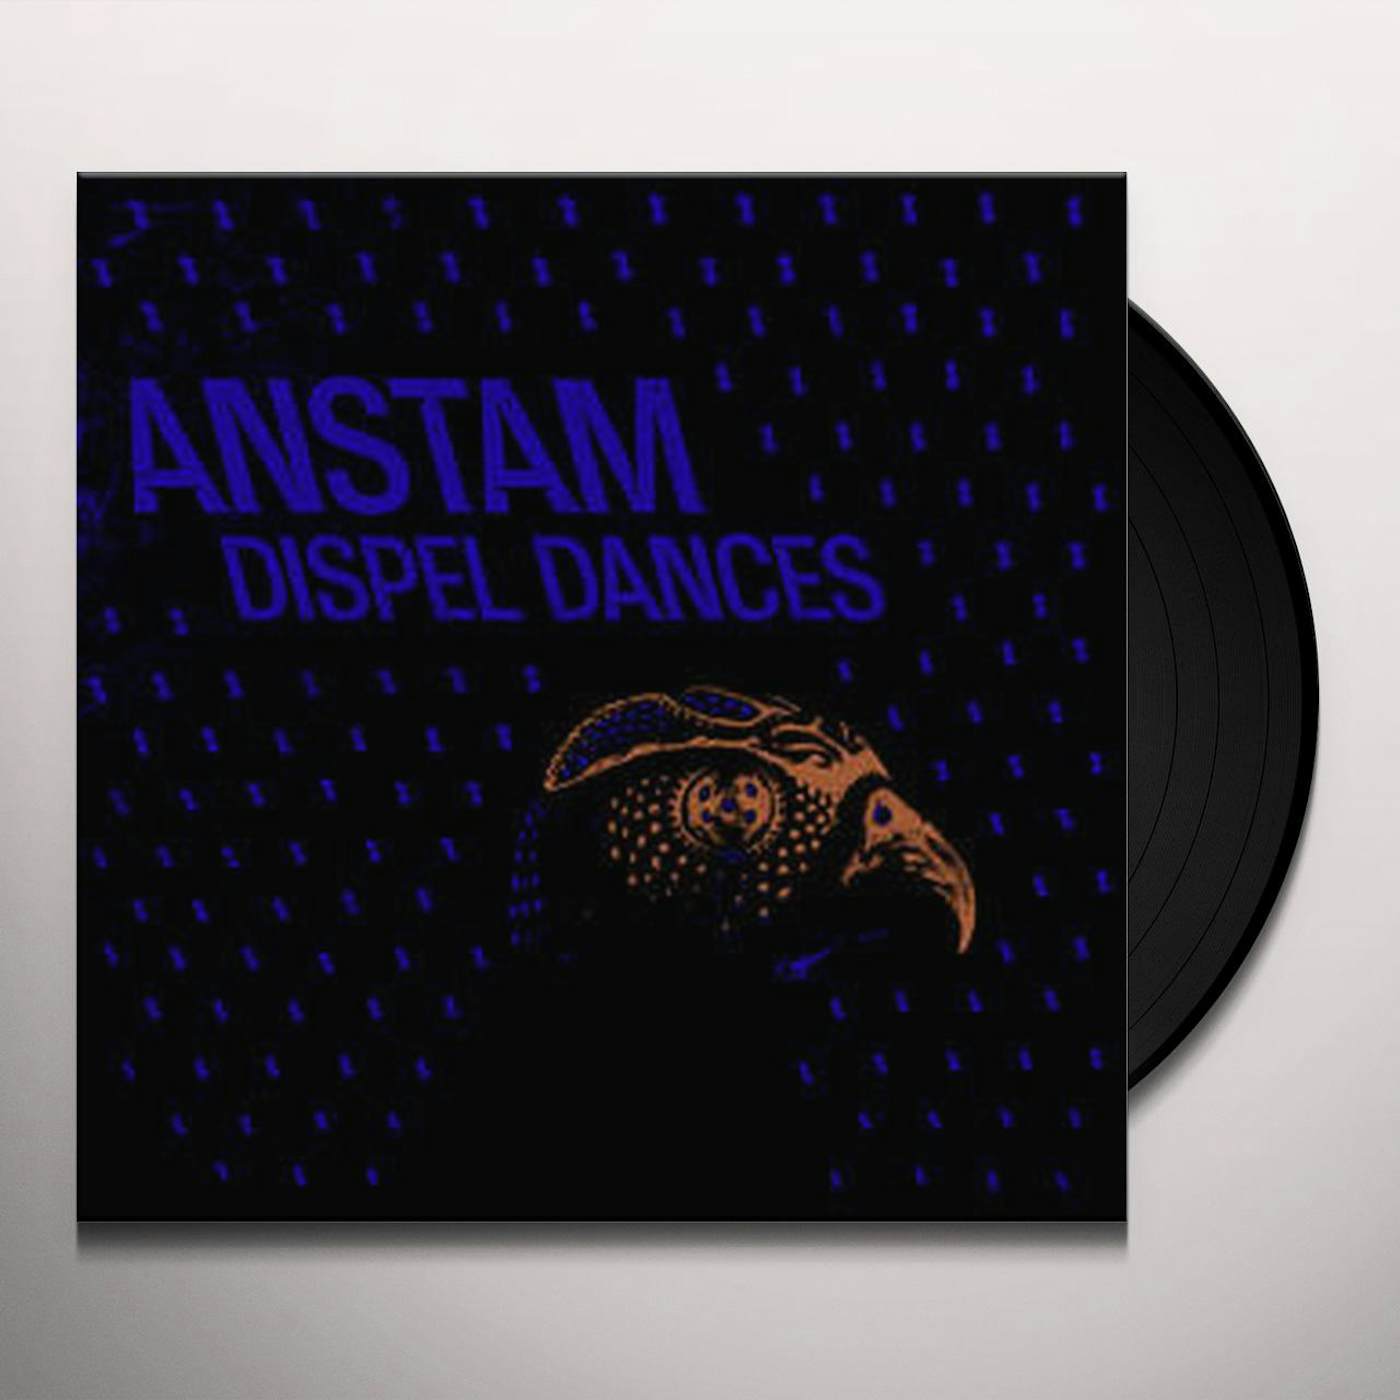 Anstam Dispel Dances Vinyl Record